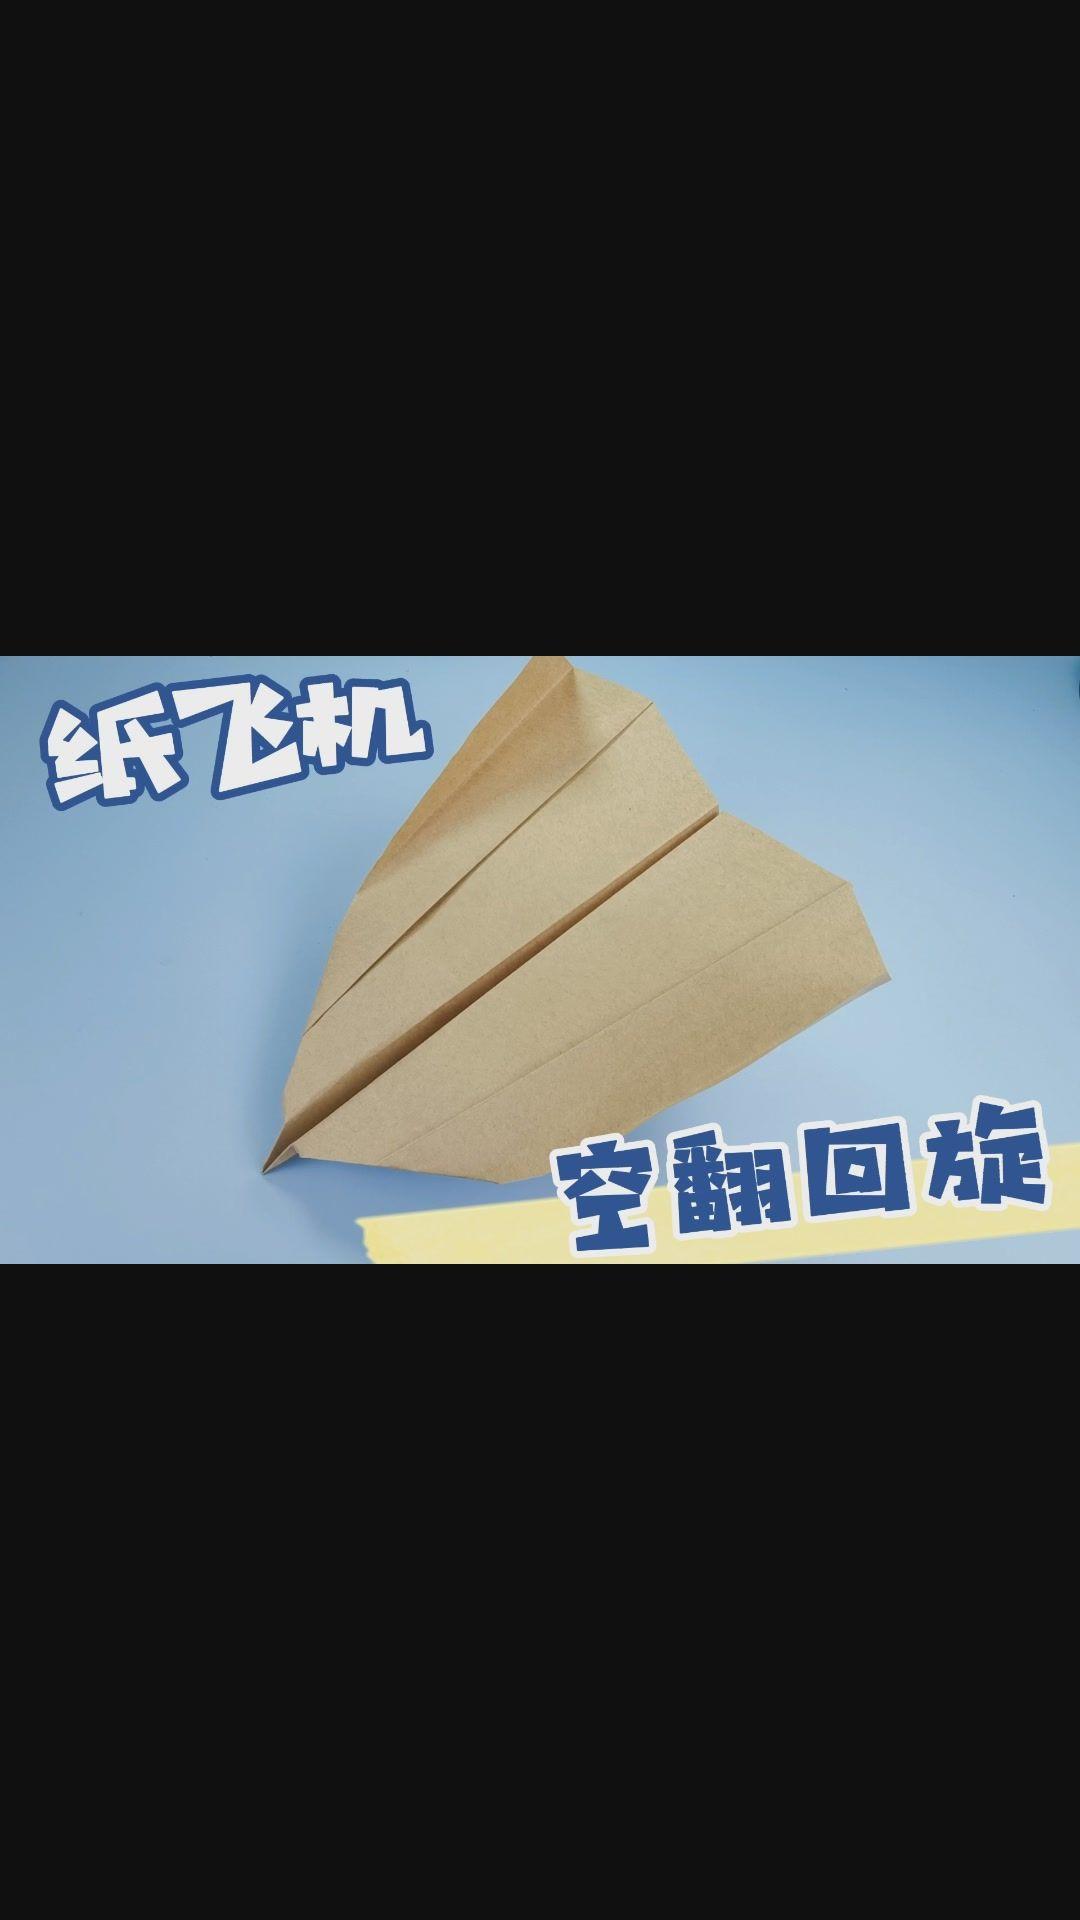 网上超火的回旋纸飞机正确版教程来了折法很简单